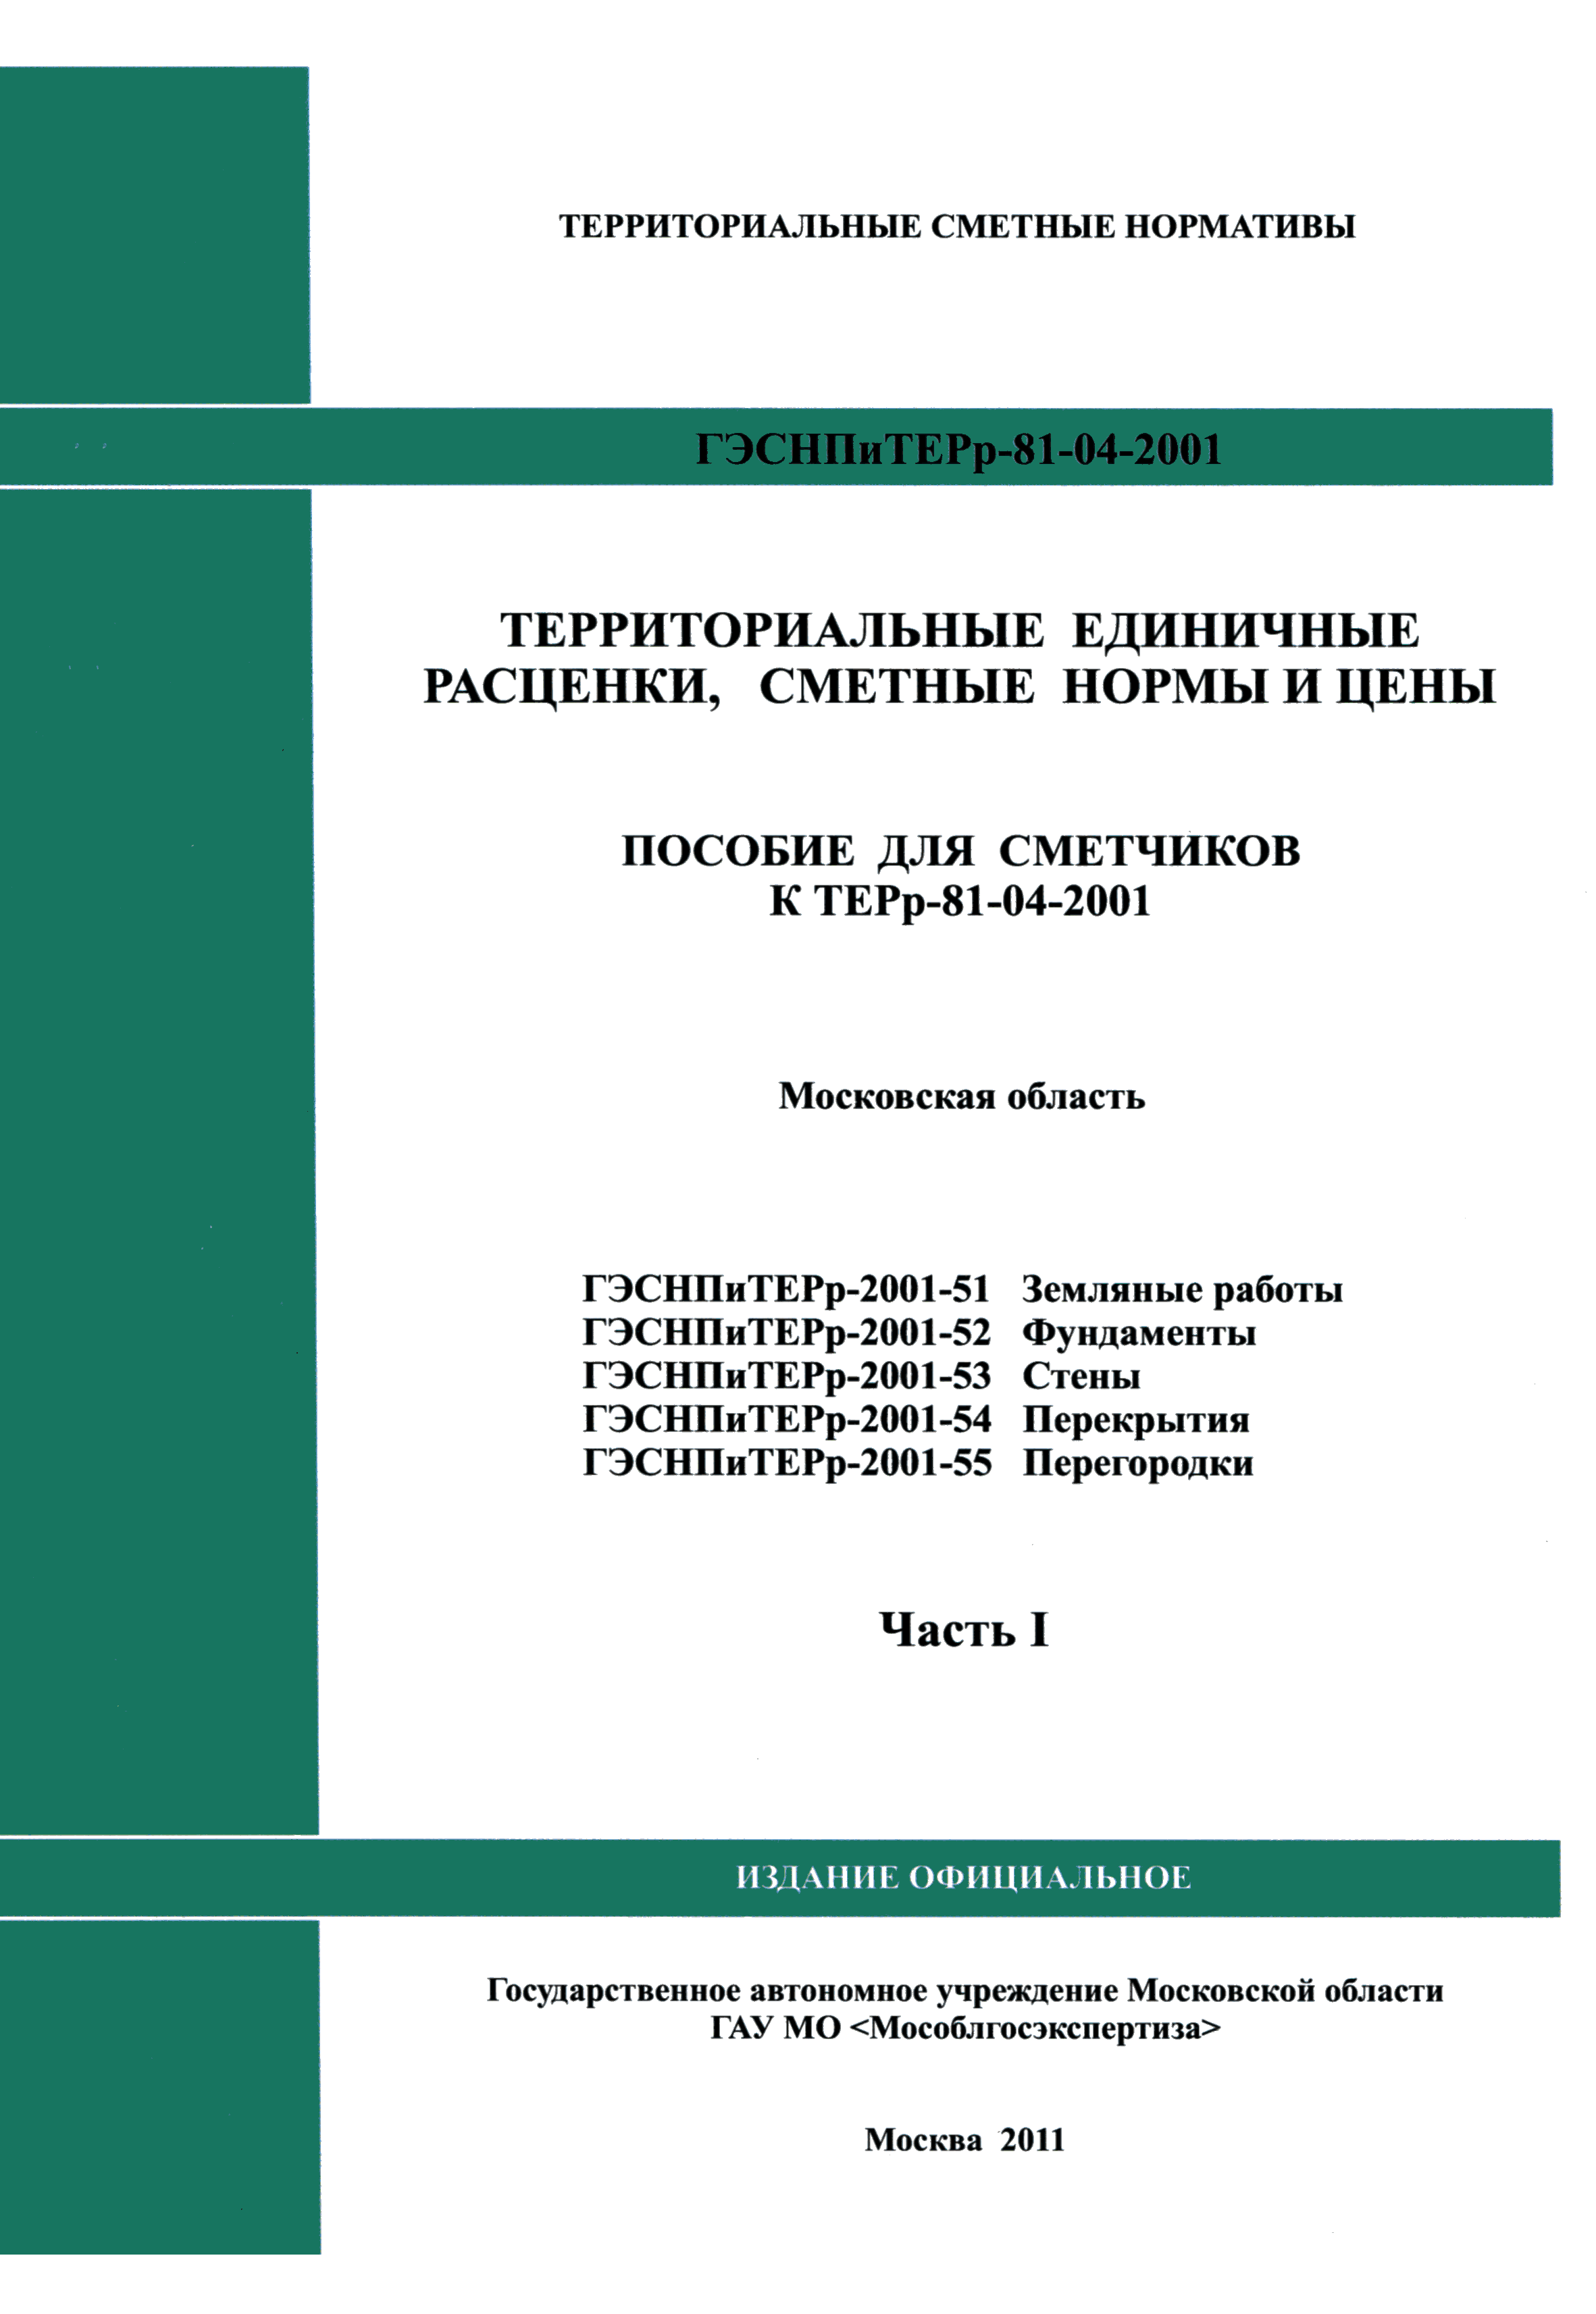 ГЭСНПиТЕРр 2001-54 Московской области